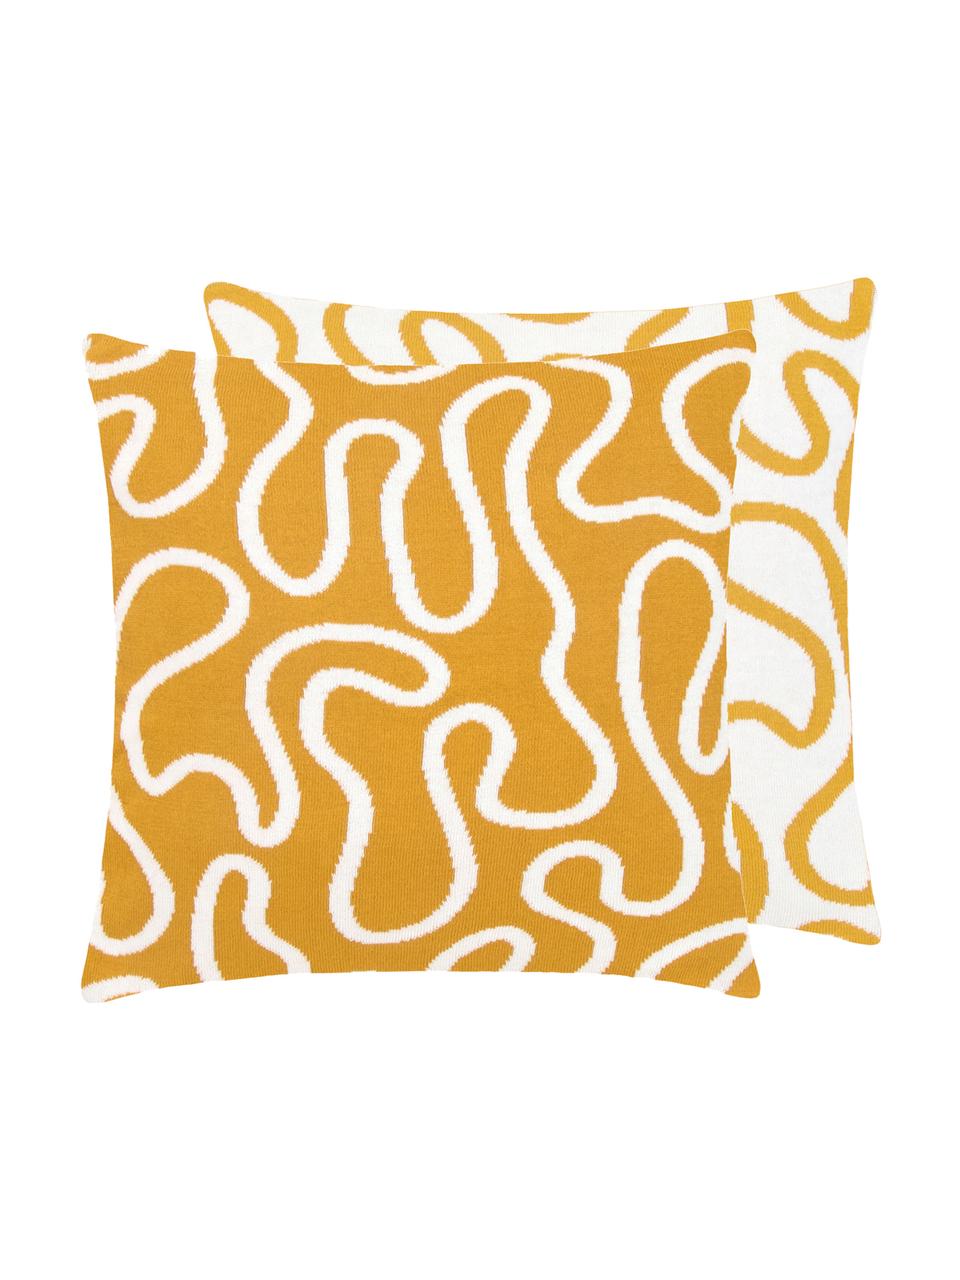 Feinstrick-Wendekissenhülle Amina mit abstraktem Linienmuster, 100% Baumwolle, Gelb/Weiß, 40 x 40 cm